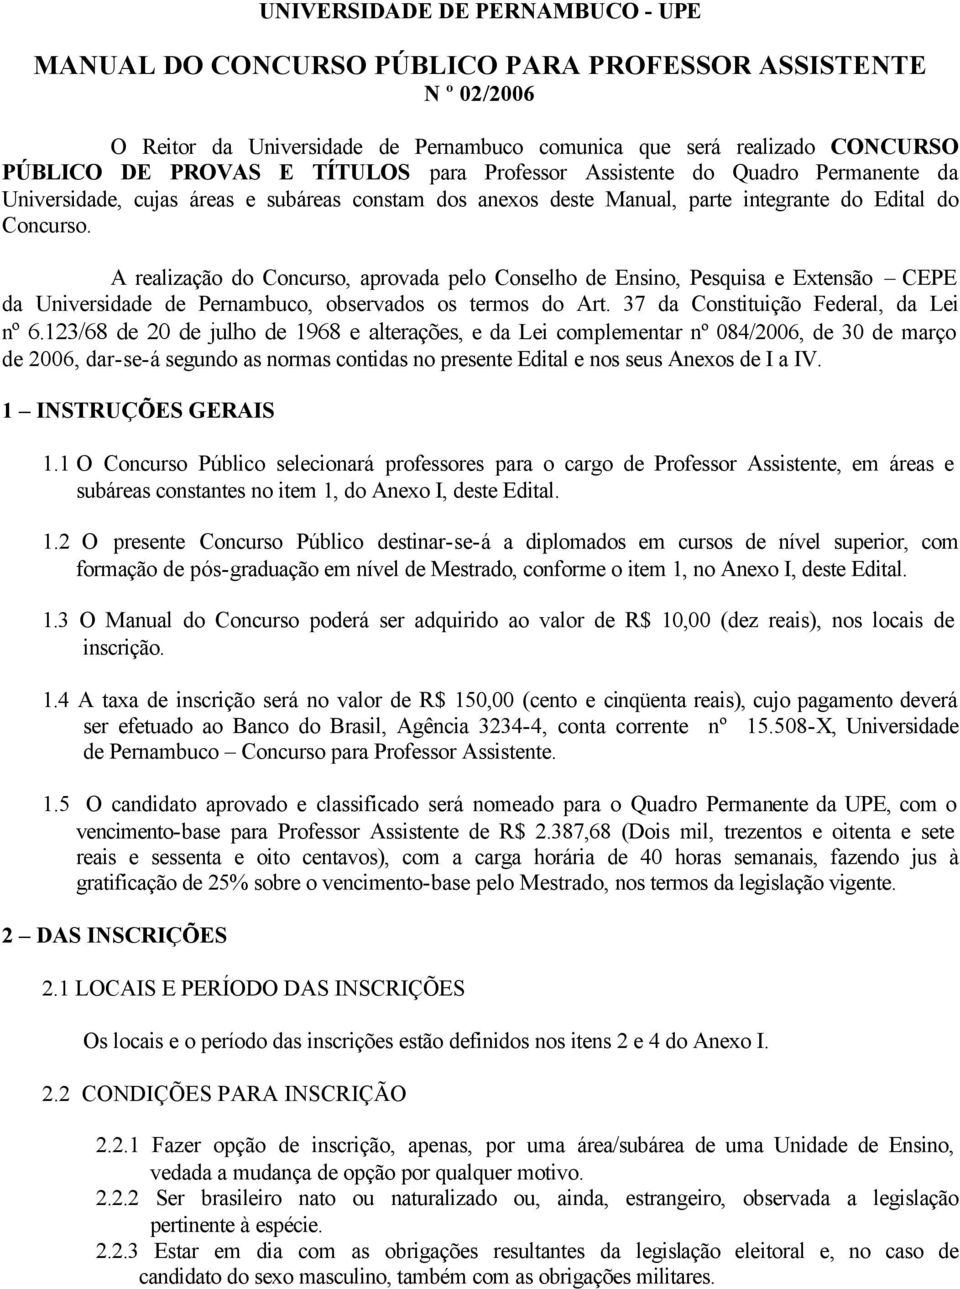 A realização do Concurso, aprovada pelo Conselho de Ensino, Pesquisa e Extensão CEPE da Universidade de Pernambuco, observados os termos do Art. 37 da Constituição Federal, da Lei nº 6.